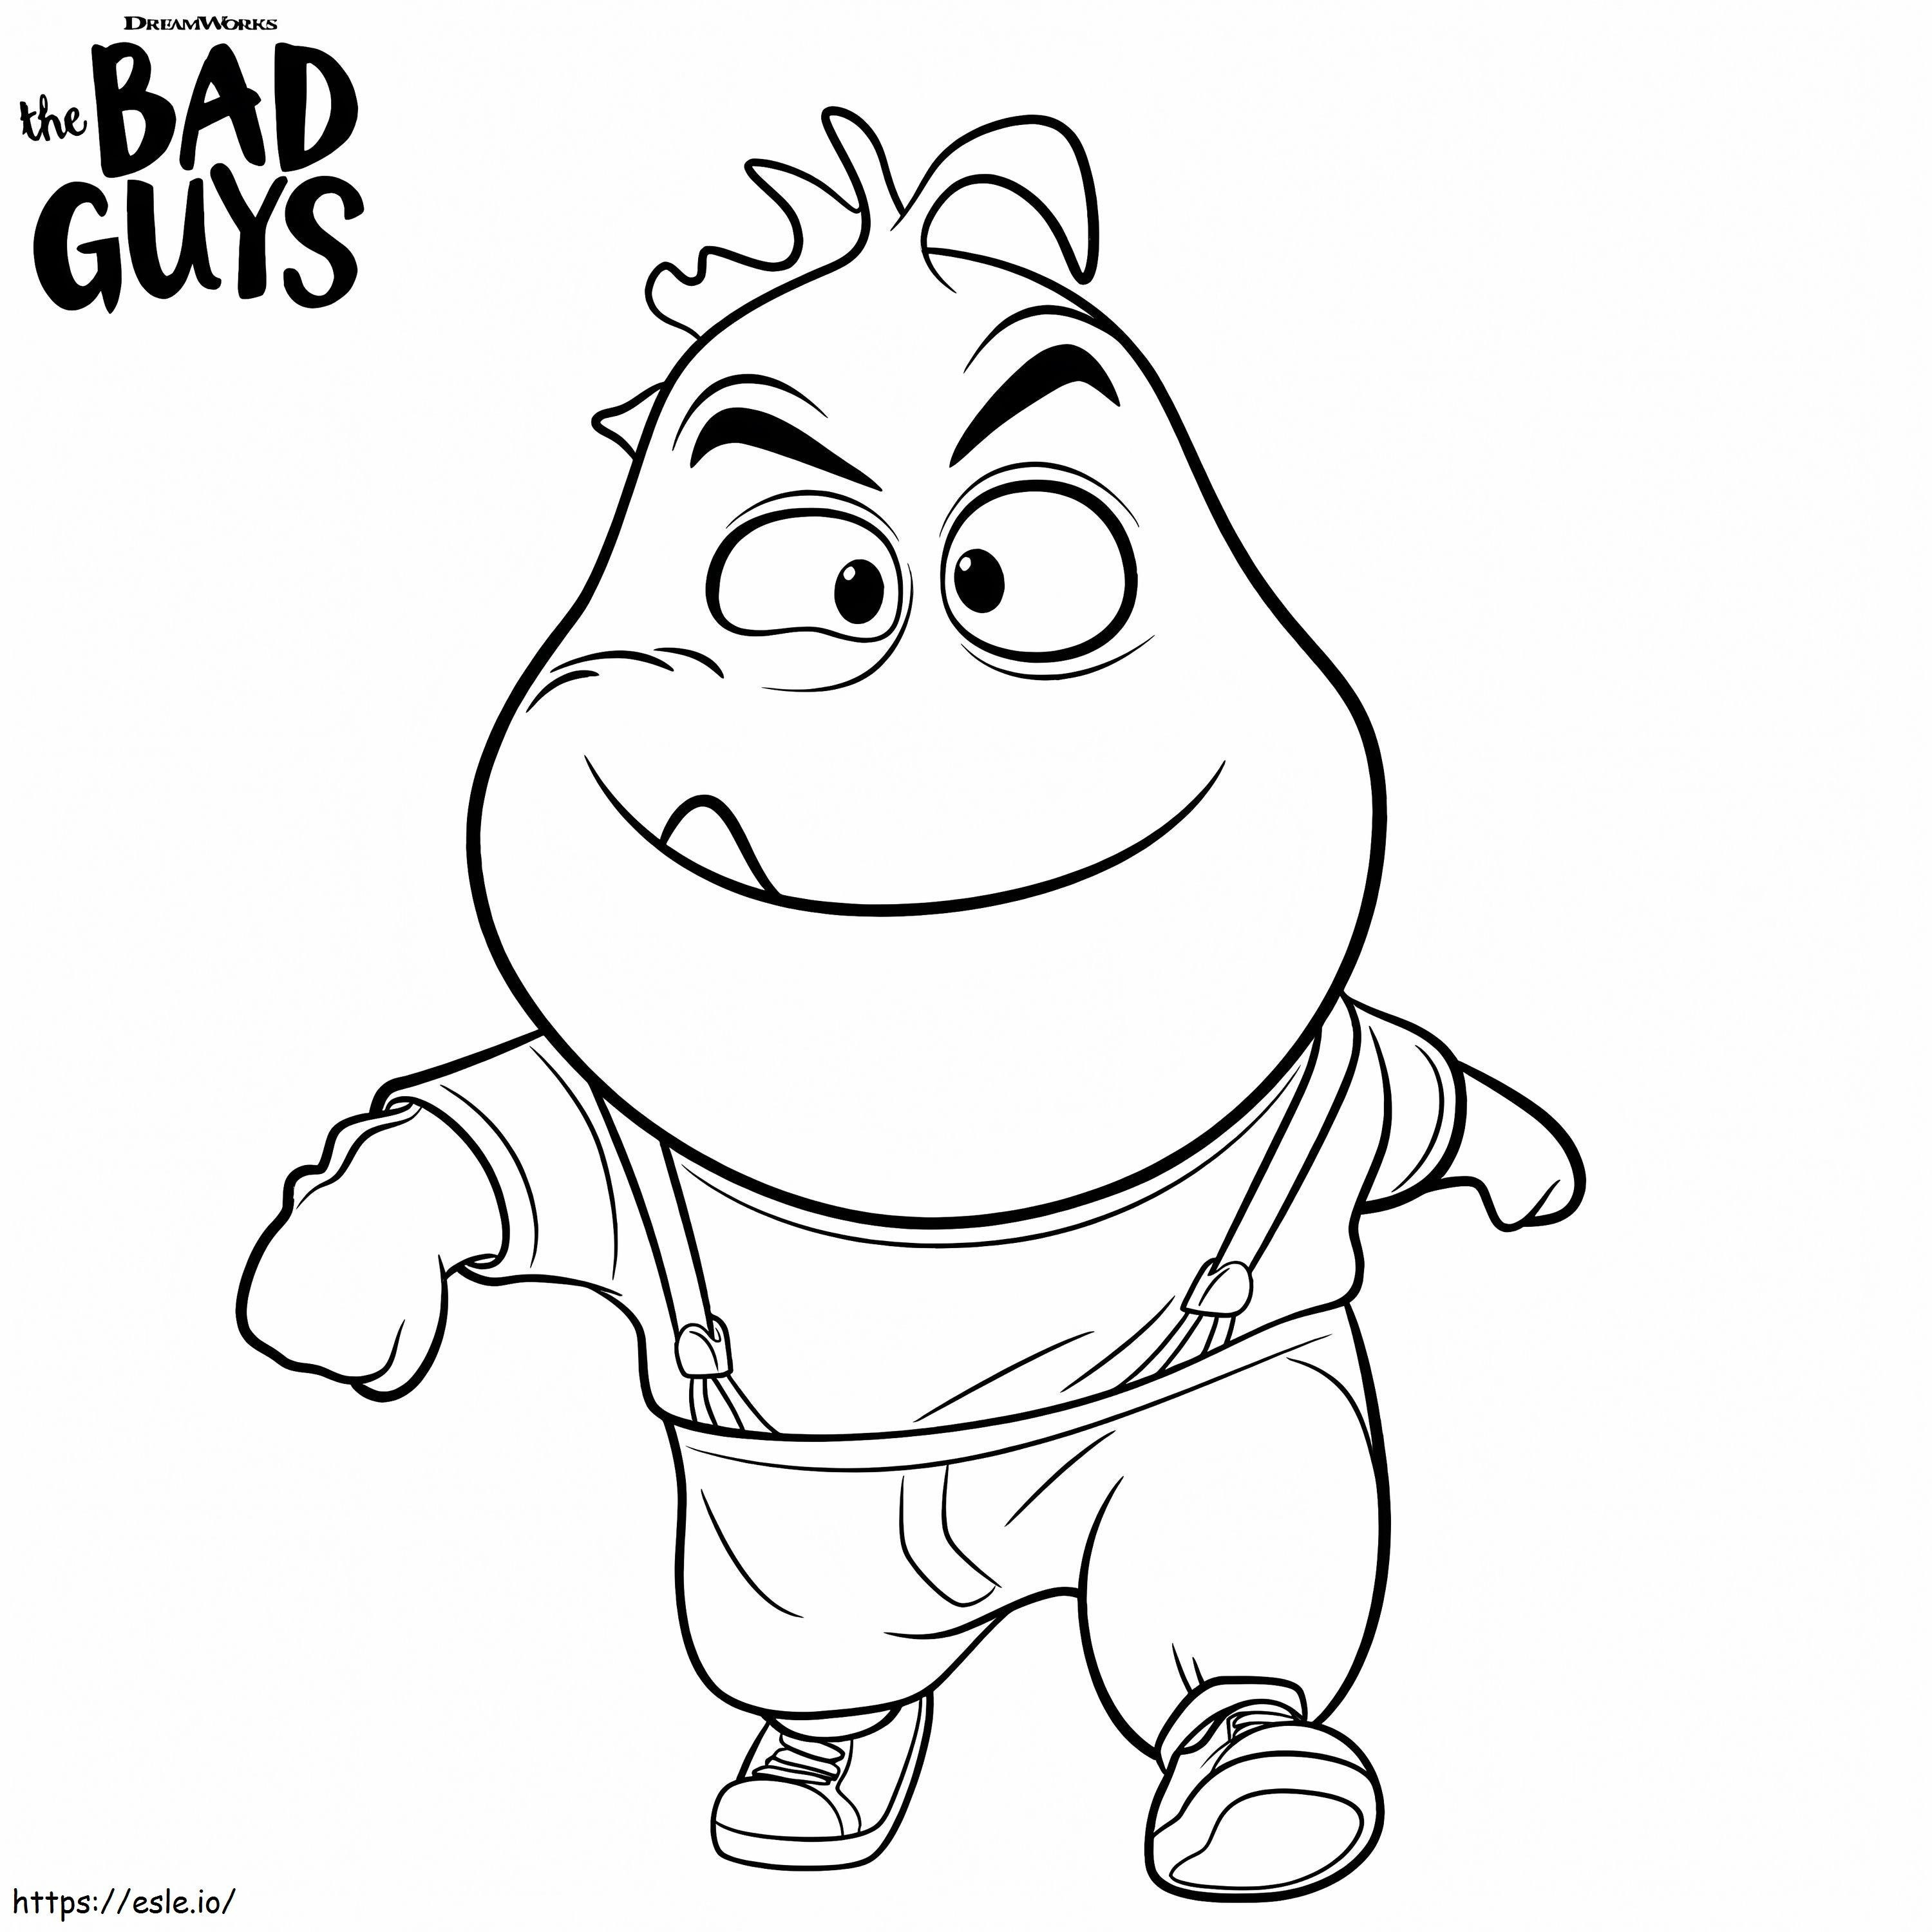 Mr. Piranha von The Bad Guys ausmalbilder